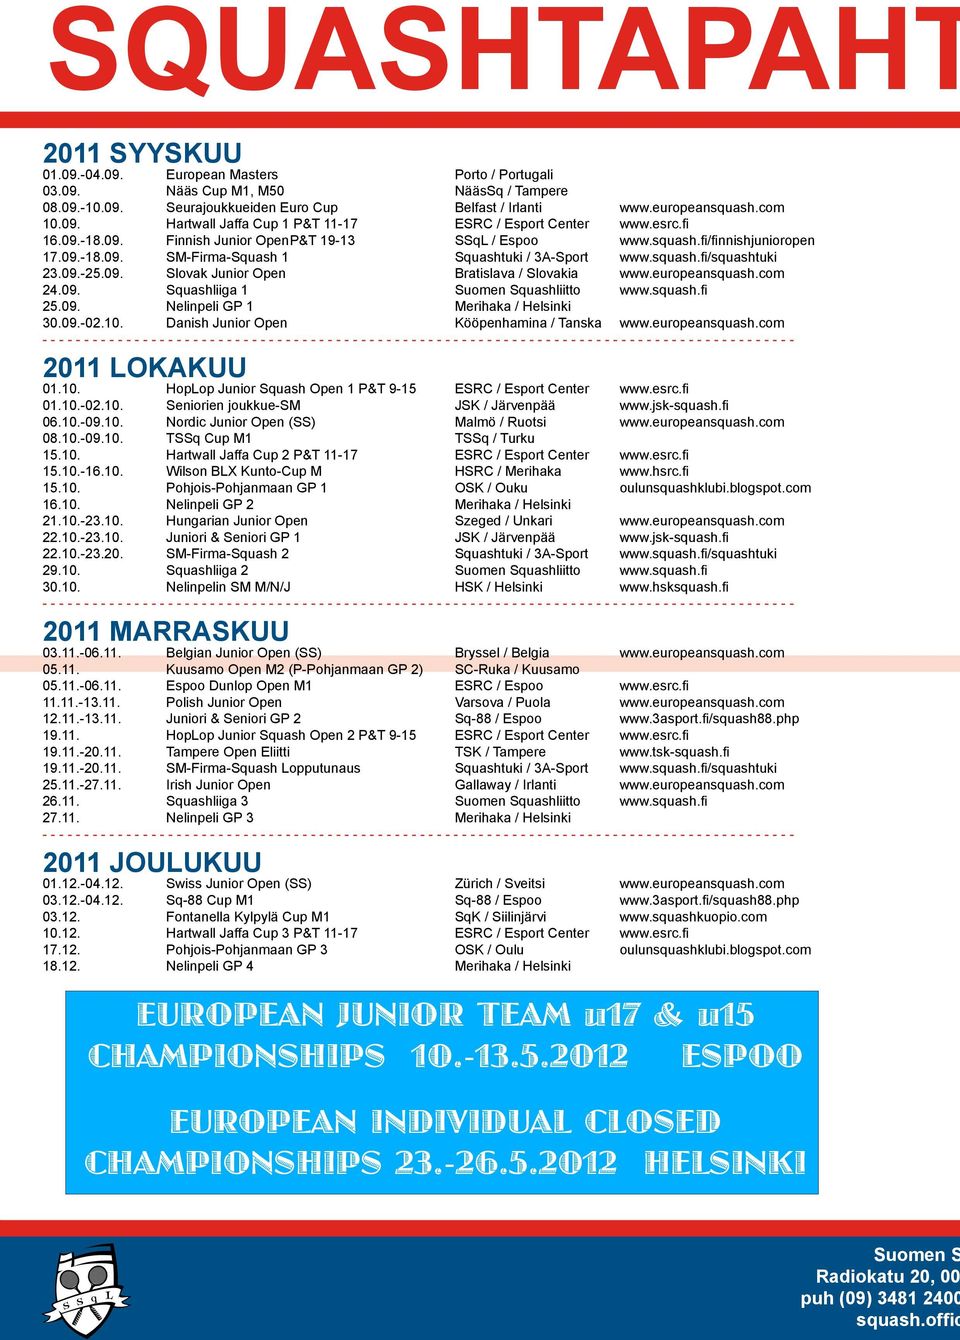 squash.fi/squashtuki 23.09.-25.09. Slovak Junior Open Bratislava / Slovakia www.europeansquash.com 24.09. Squashliiga 1 Suomen Squashliitto www.squash.fi 25.09. Nelinpeli GP 1 Merihaka / Helsinki 30.